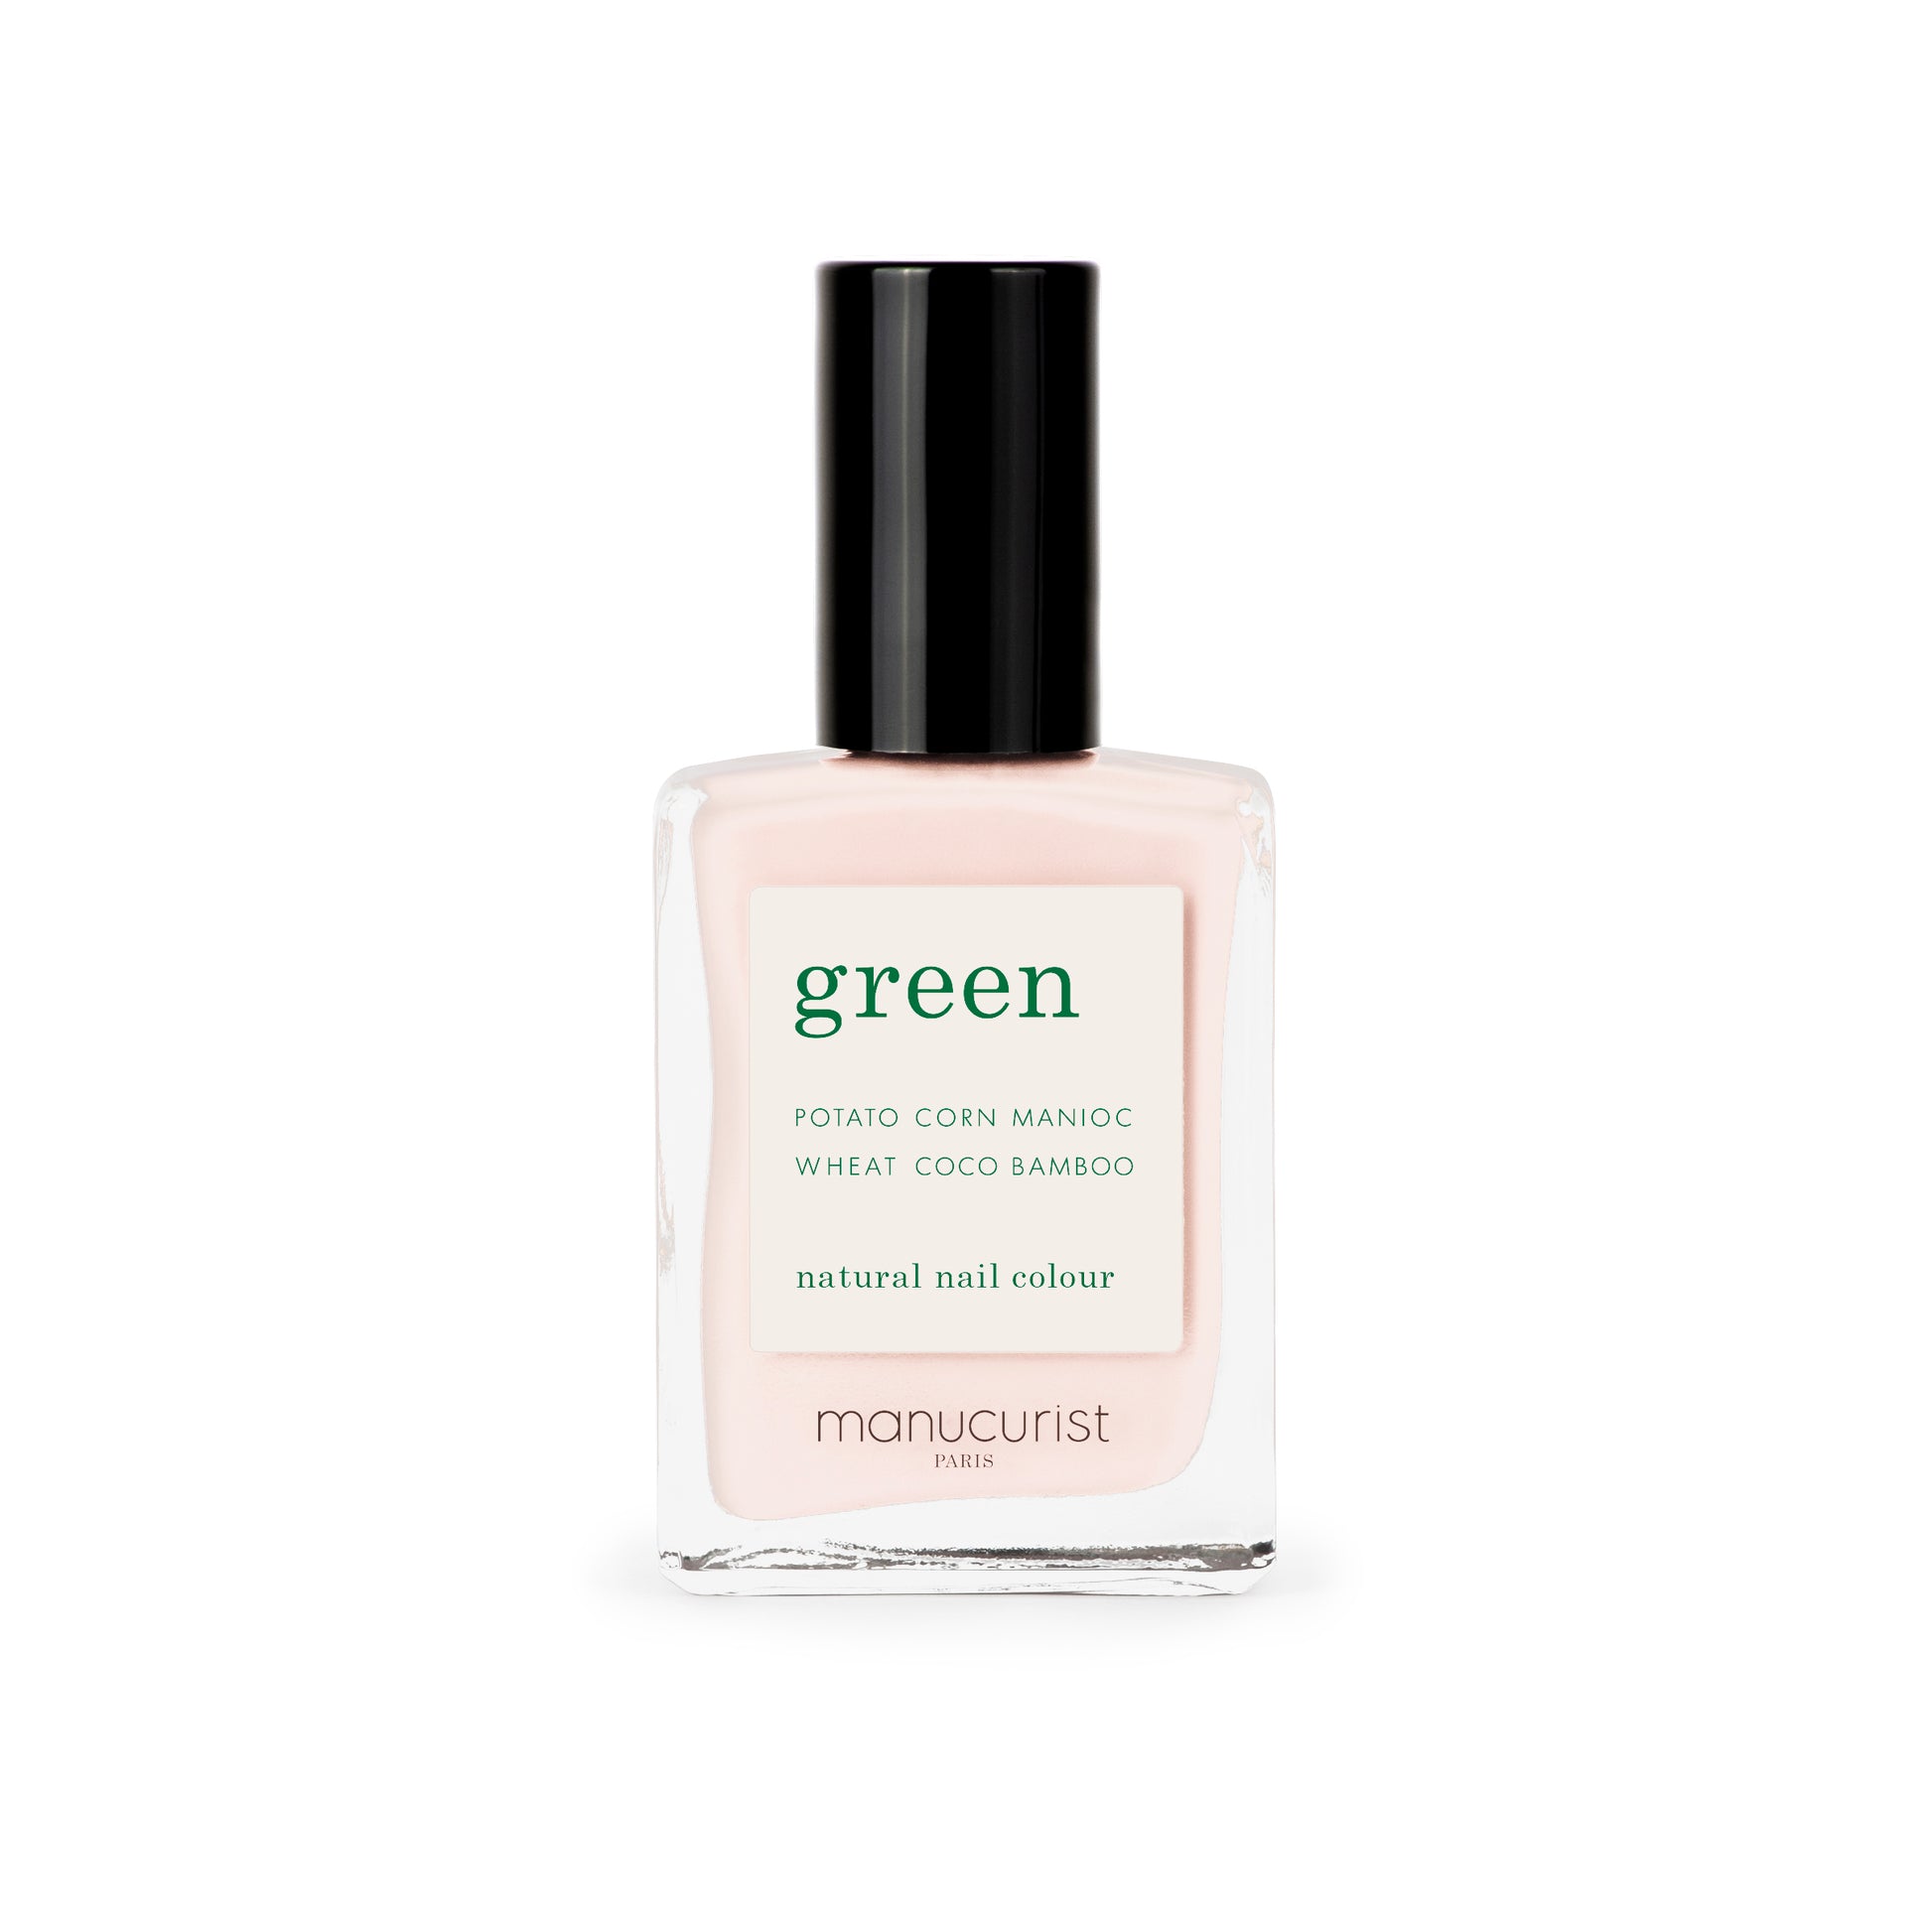 Nagellack "green"  pastel pink manucurist vegan nachhaltigkeit